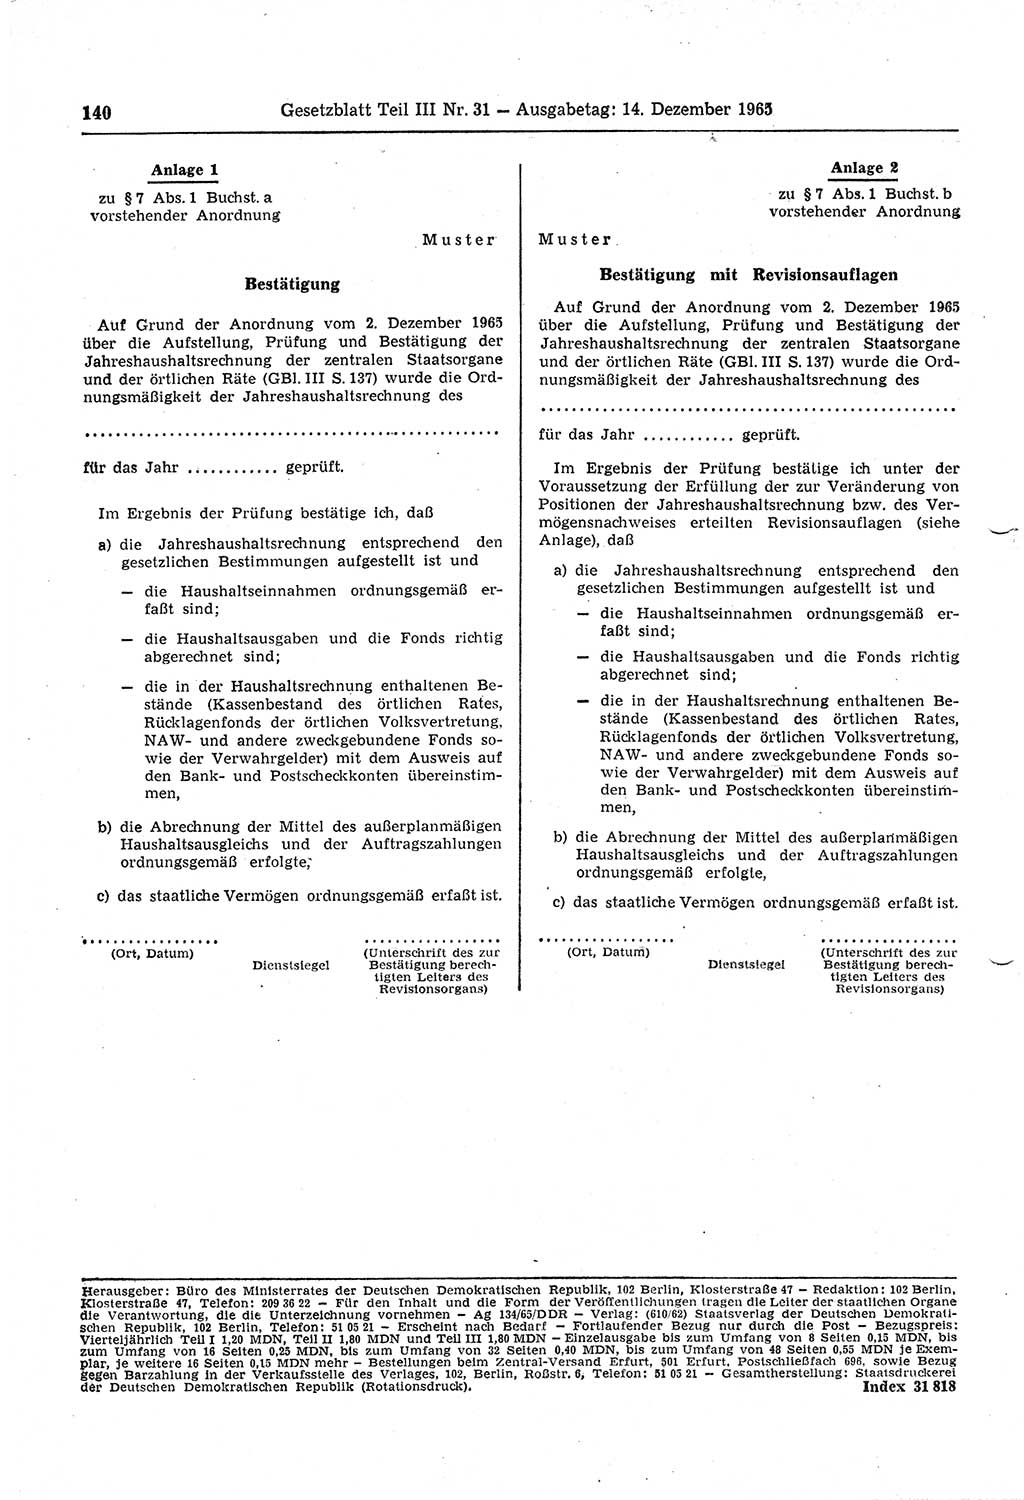 Gesetzblatt (GBl.) der Deutschen Demokratischen Republik (DDR) Teil ⅠⅠⅠ 1965, Seite 140 (GBl. DDR ⅠⅠⅠ 1965, S. 140)